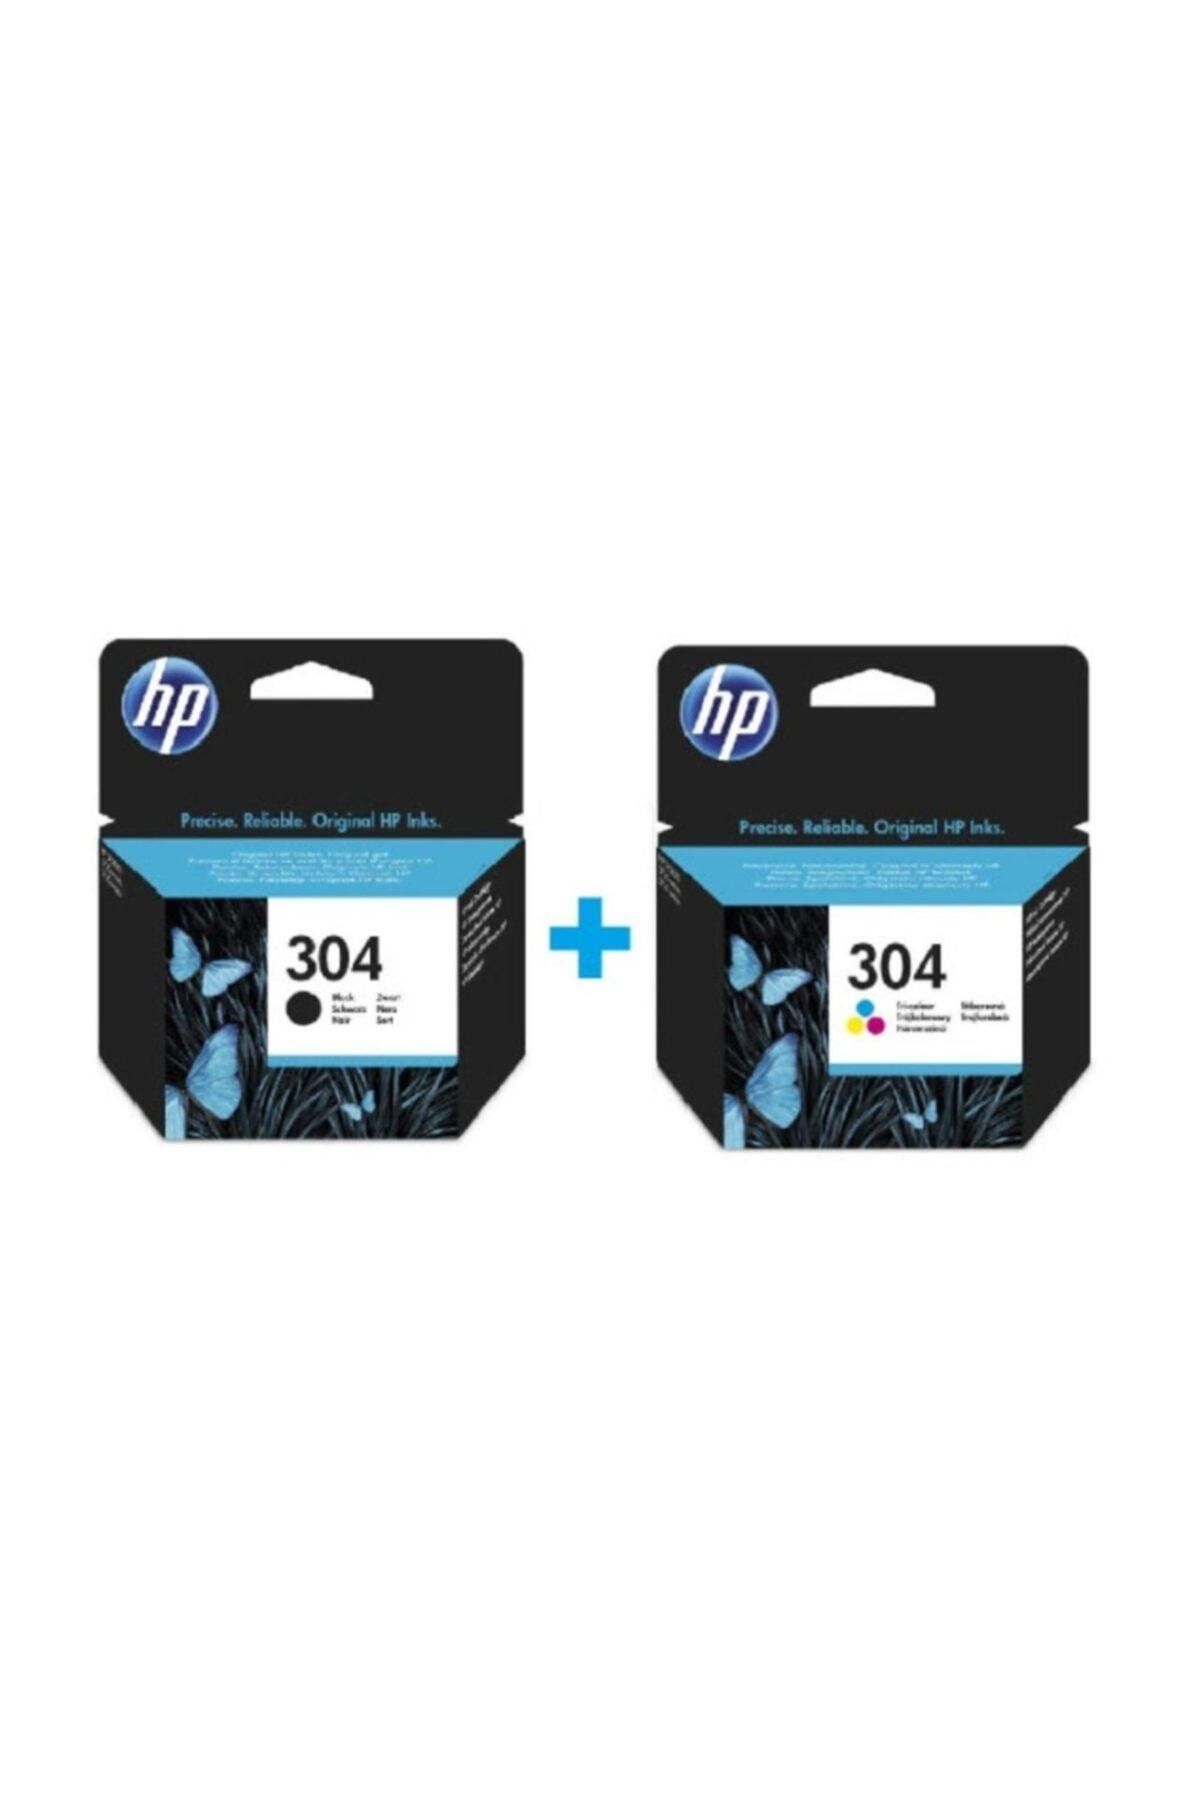 HP 304 Kartuş Siyah N9K06AE + HP 304 Renkli Kartuş N9K05AE Set